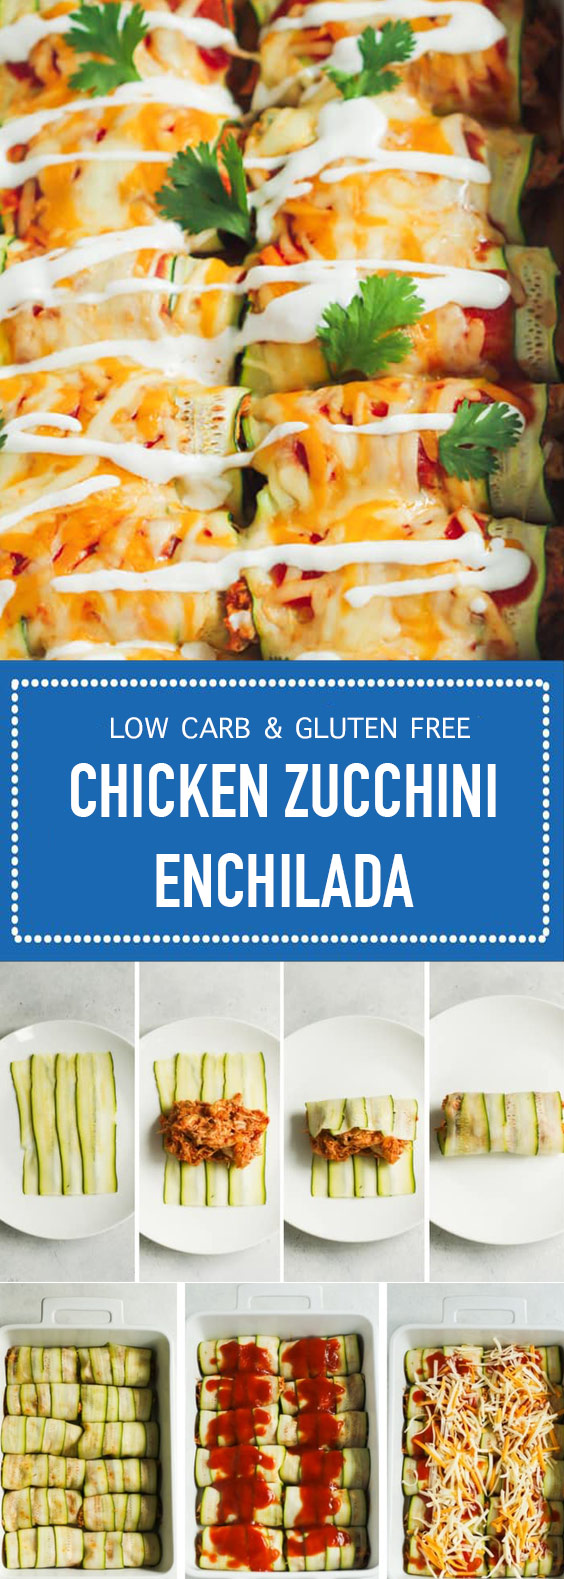 Low Carb & Gluten Free Chicken Zucchini Enchilada